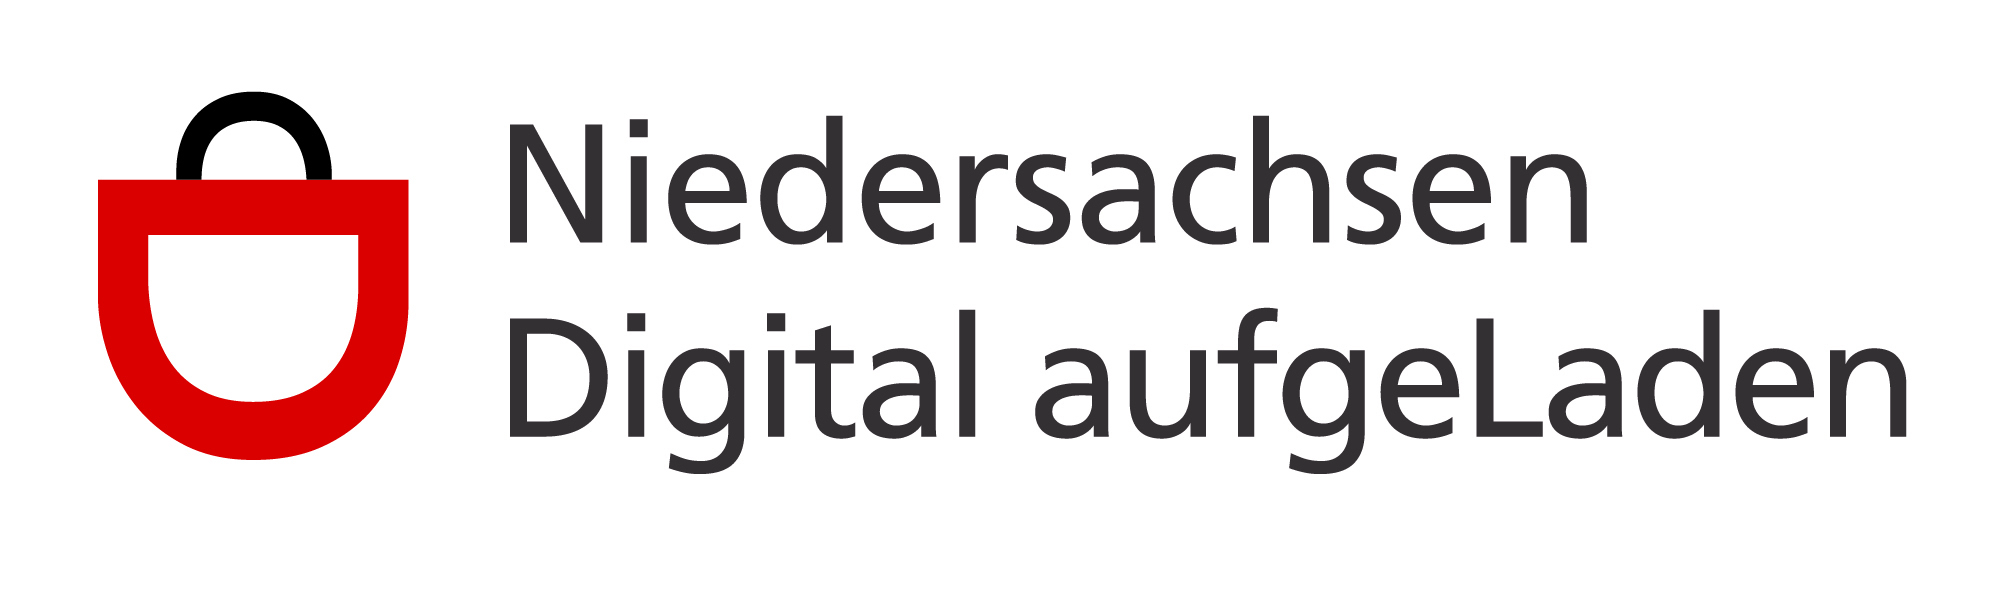 Niedersachsen digital aufgeLaden Logo, Digitalagentur Oldenburg, Förderprogramm, Einzelhandel